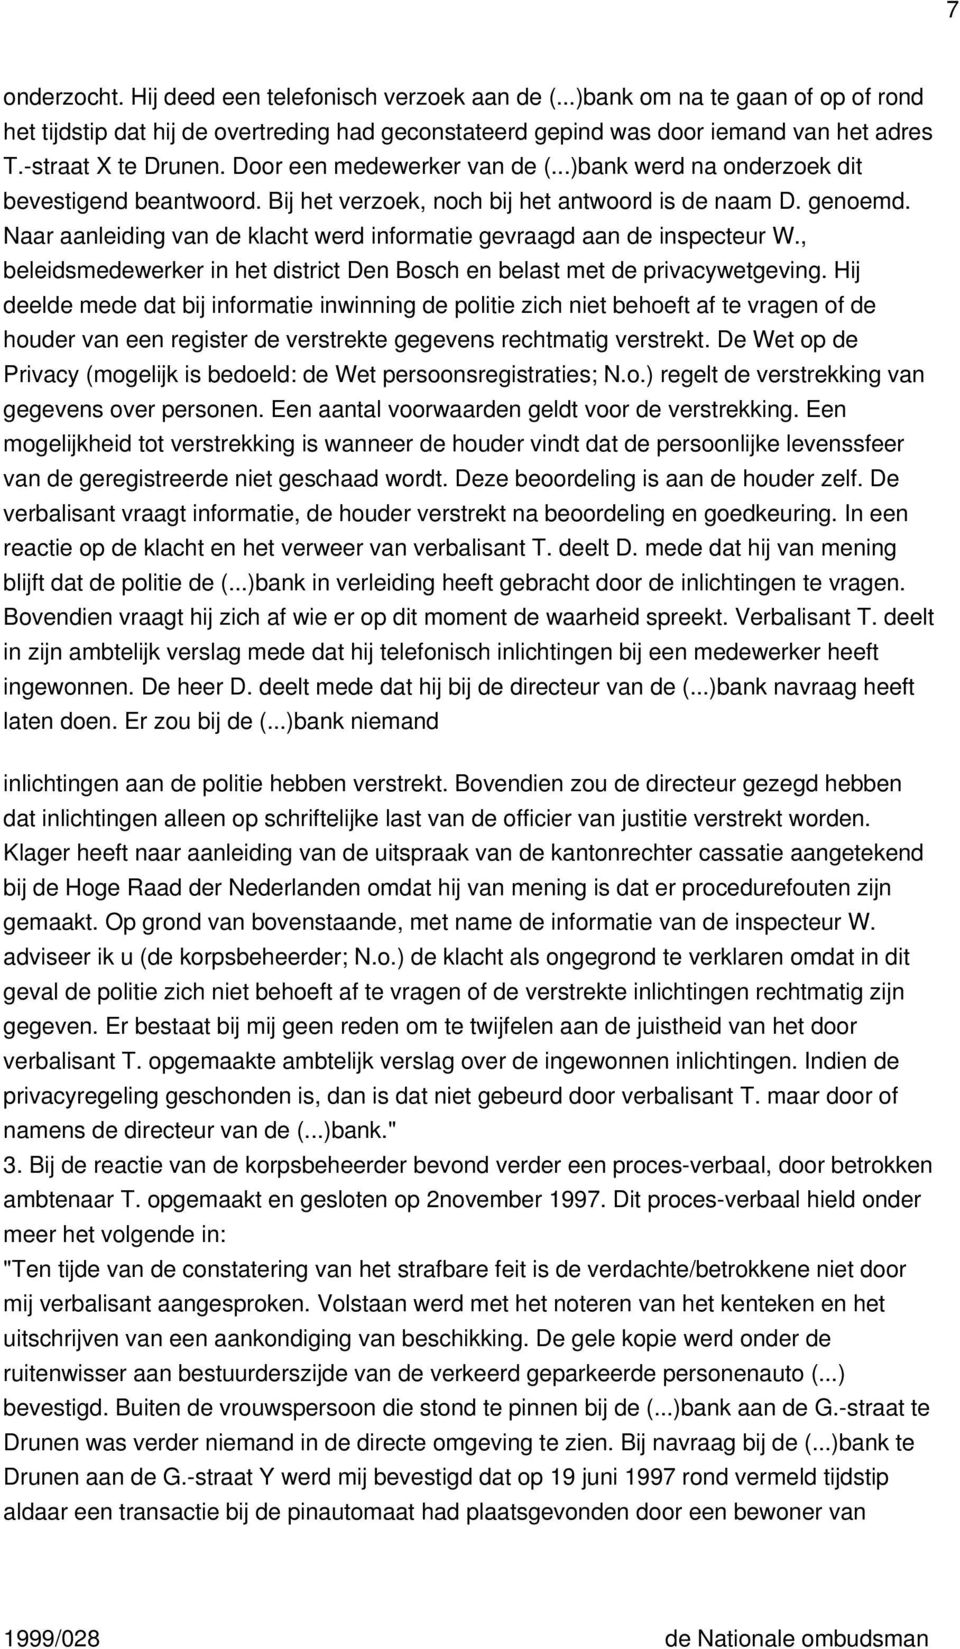 Naar aanleiding van de klacht werd informatie gevraagd aan de inspecteur W., beleidsmedewerker in het district Den Bosch en belast met de privacywetgeving.